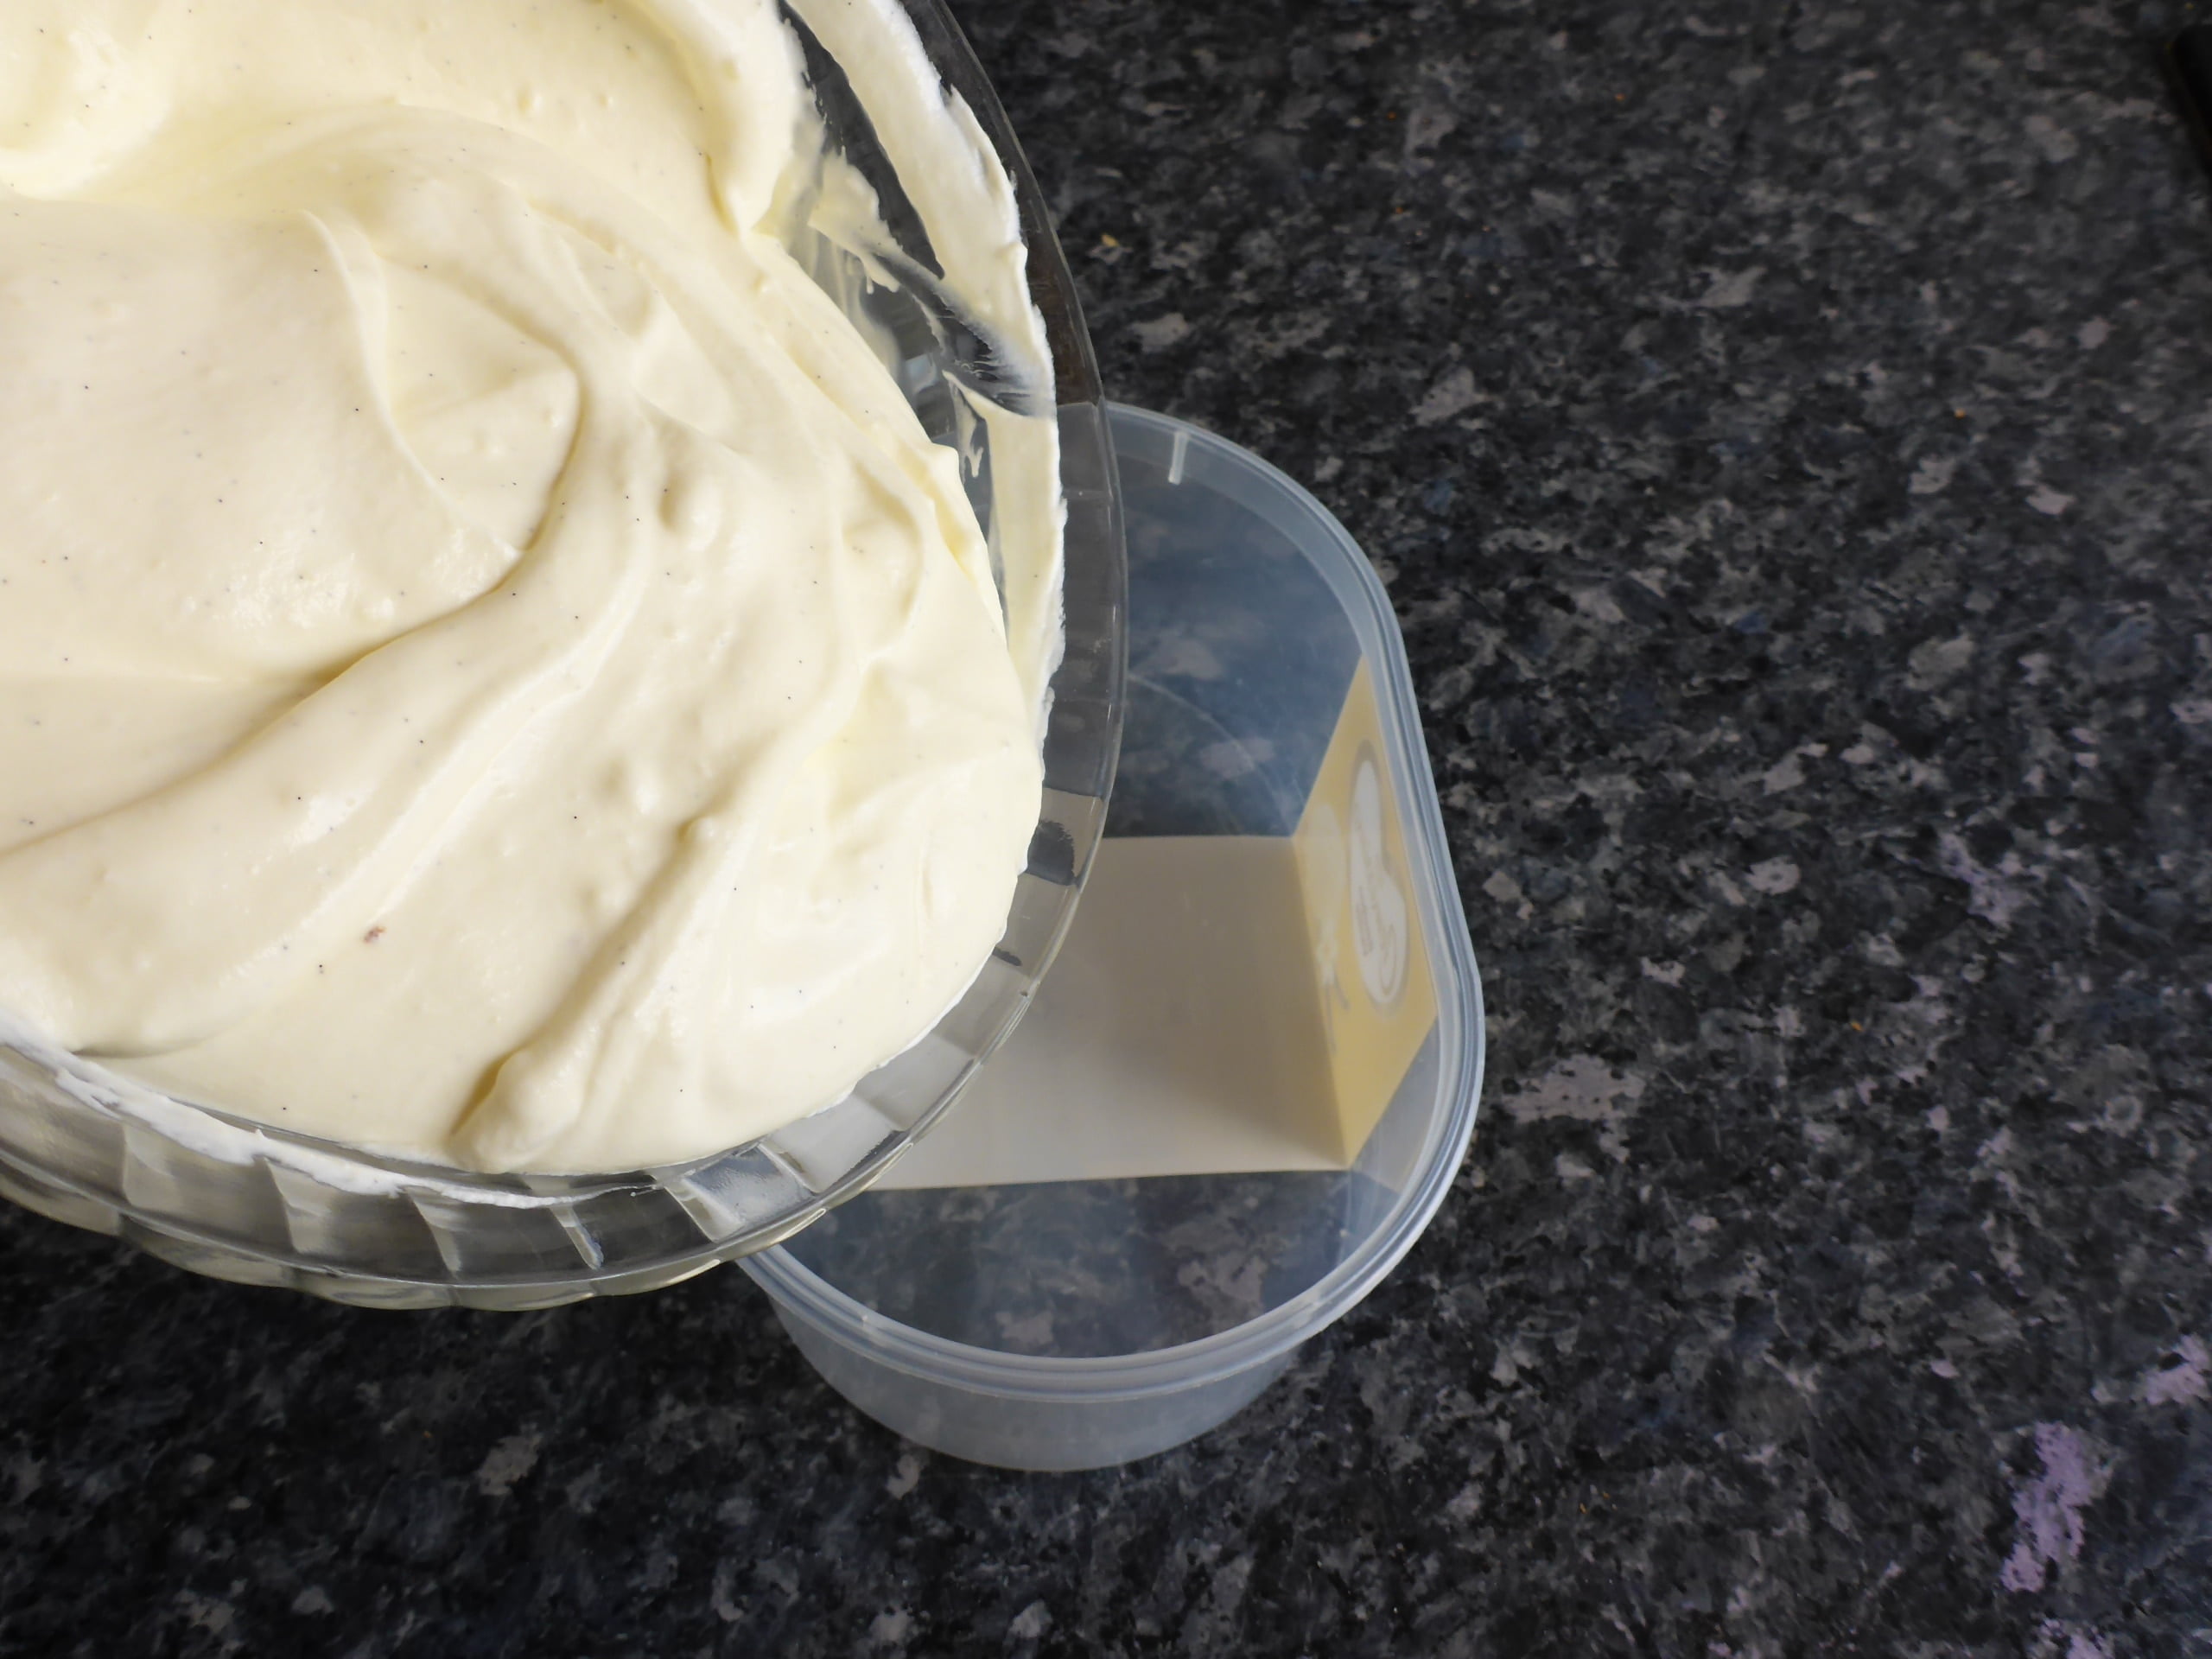 Schritt-für-Schritt-Anleitung für die Zubereitung von Vanilleeis ohne Eier: Die entstandene Eismischung wird in einen Behälter gefüllt und für mehrere Stunden ins Gefrierfach gestellt, bis sie fest wird.